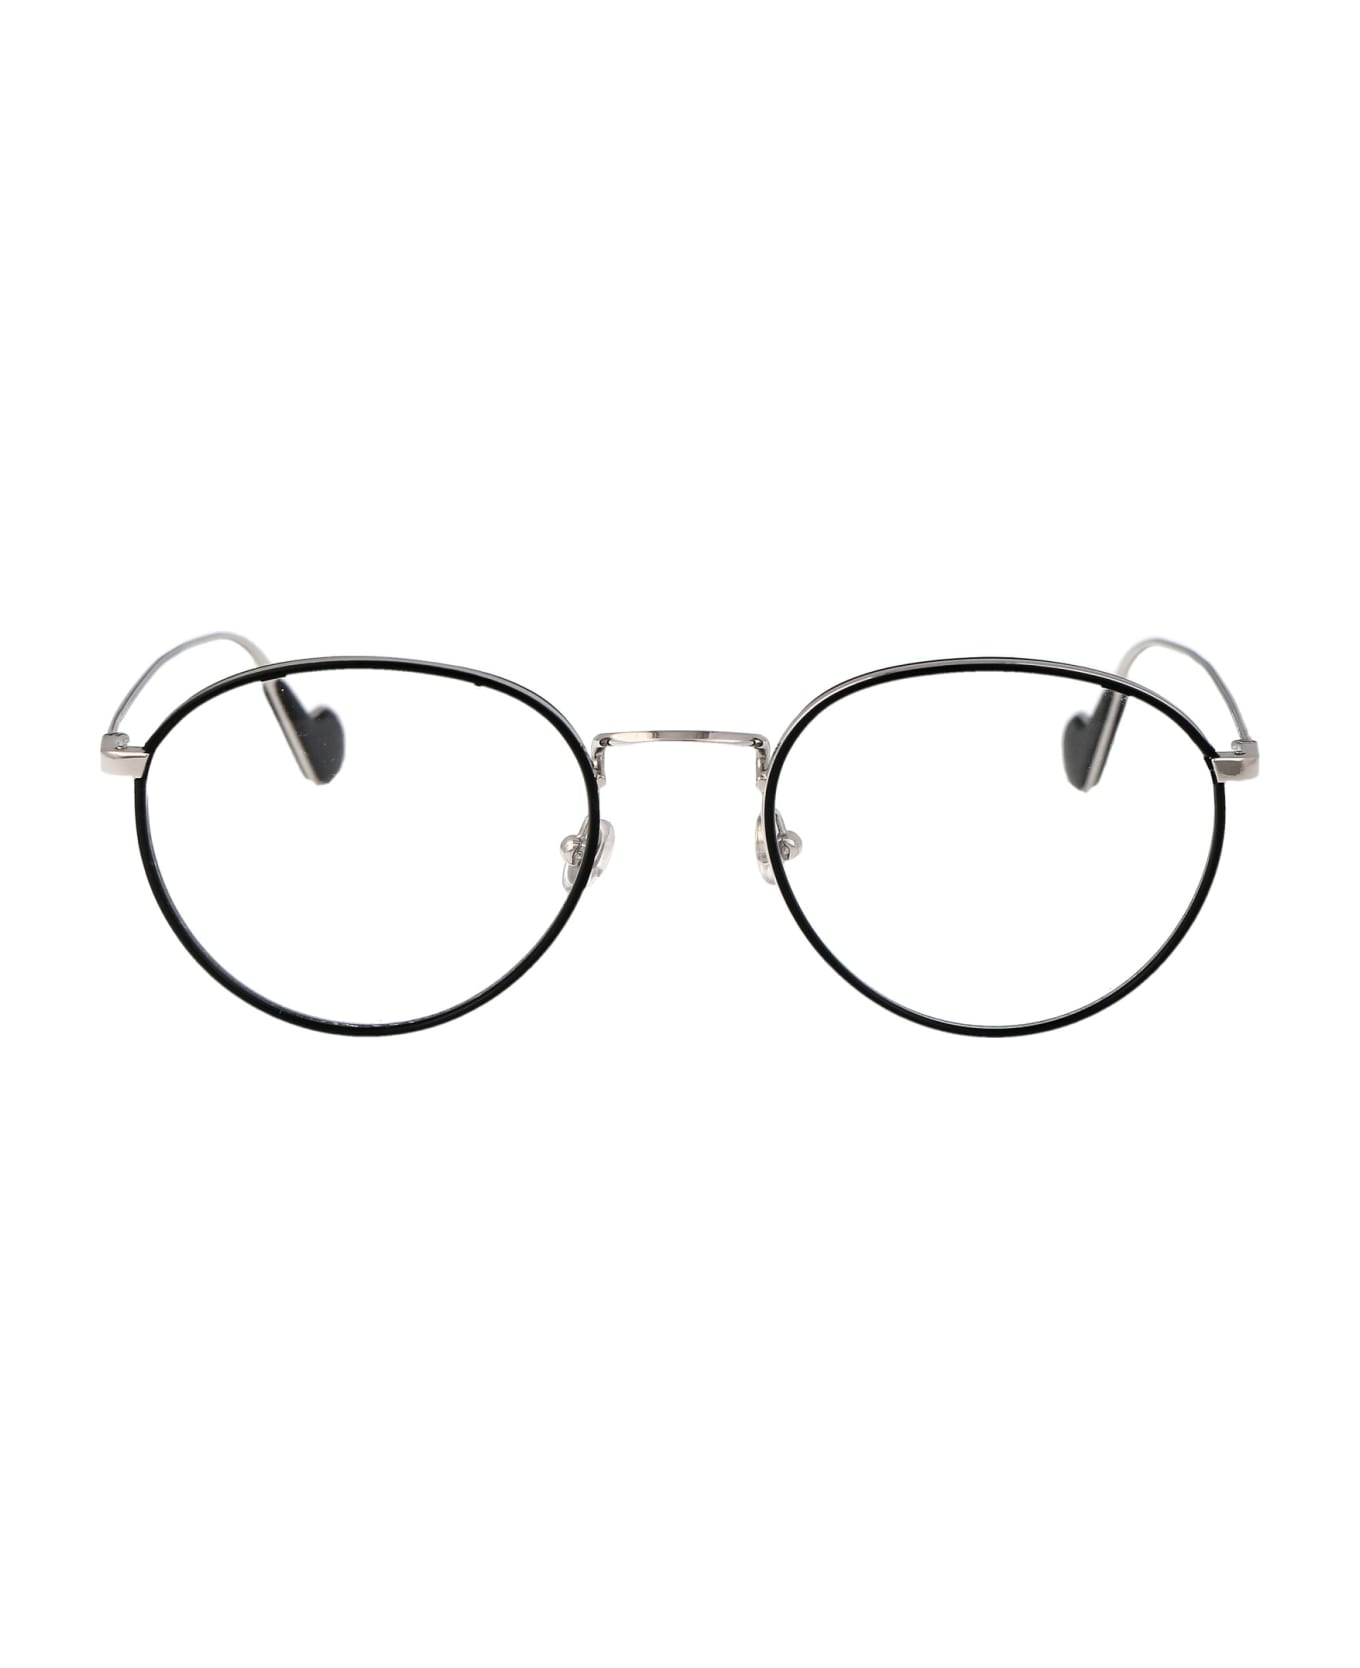 Moncler Eyewear Ml5110 Glasses - 016 Nero Lucido アイウェア